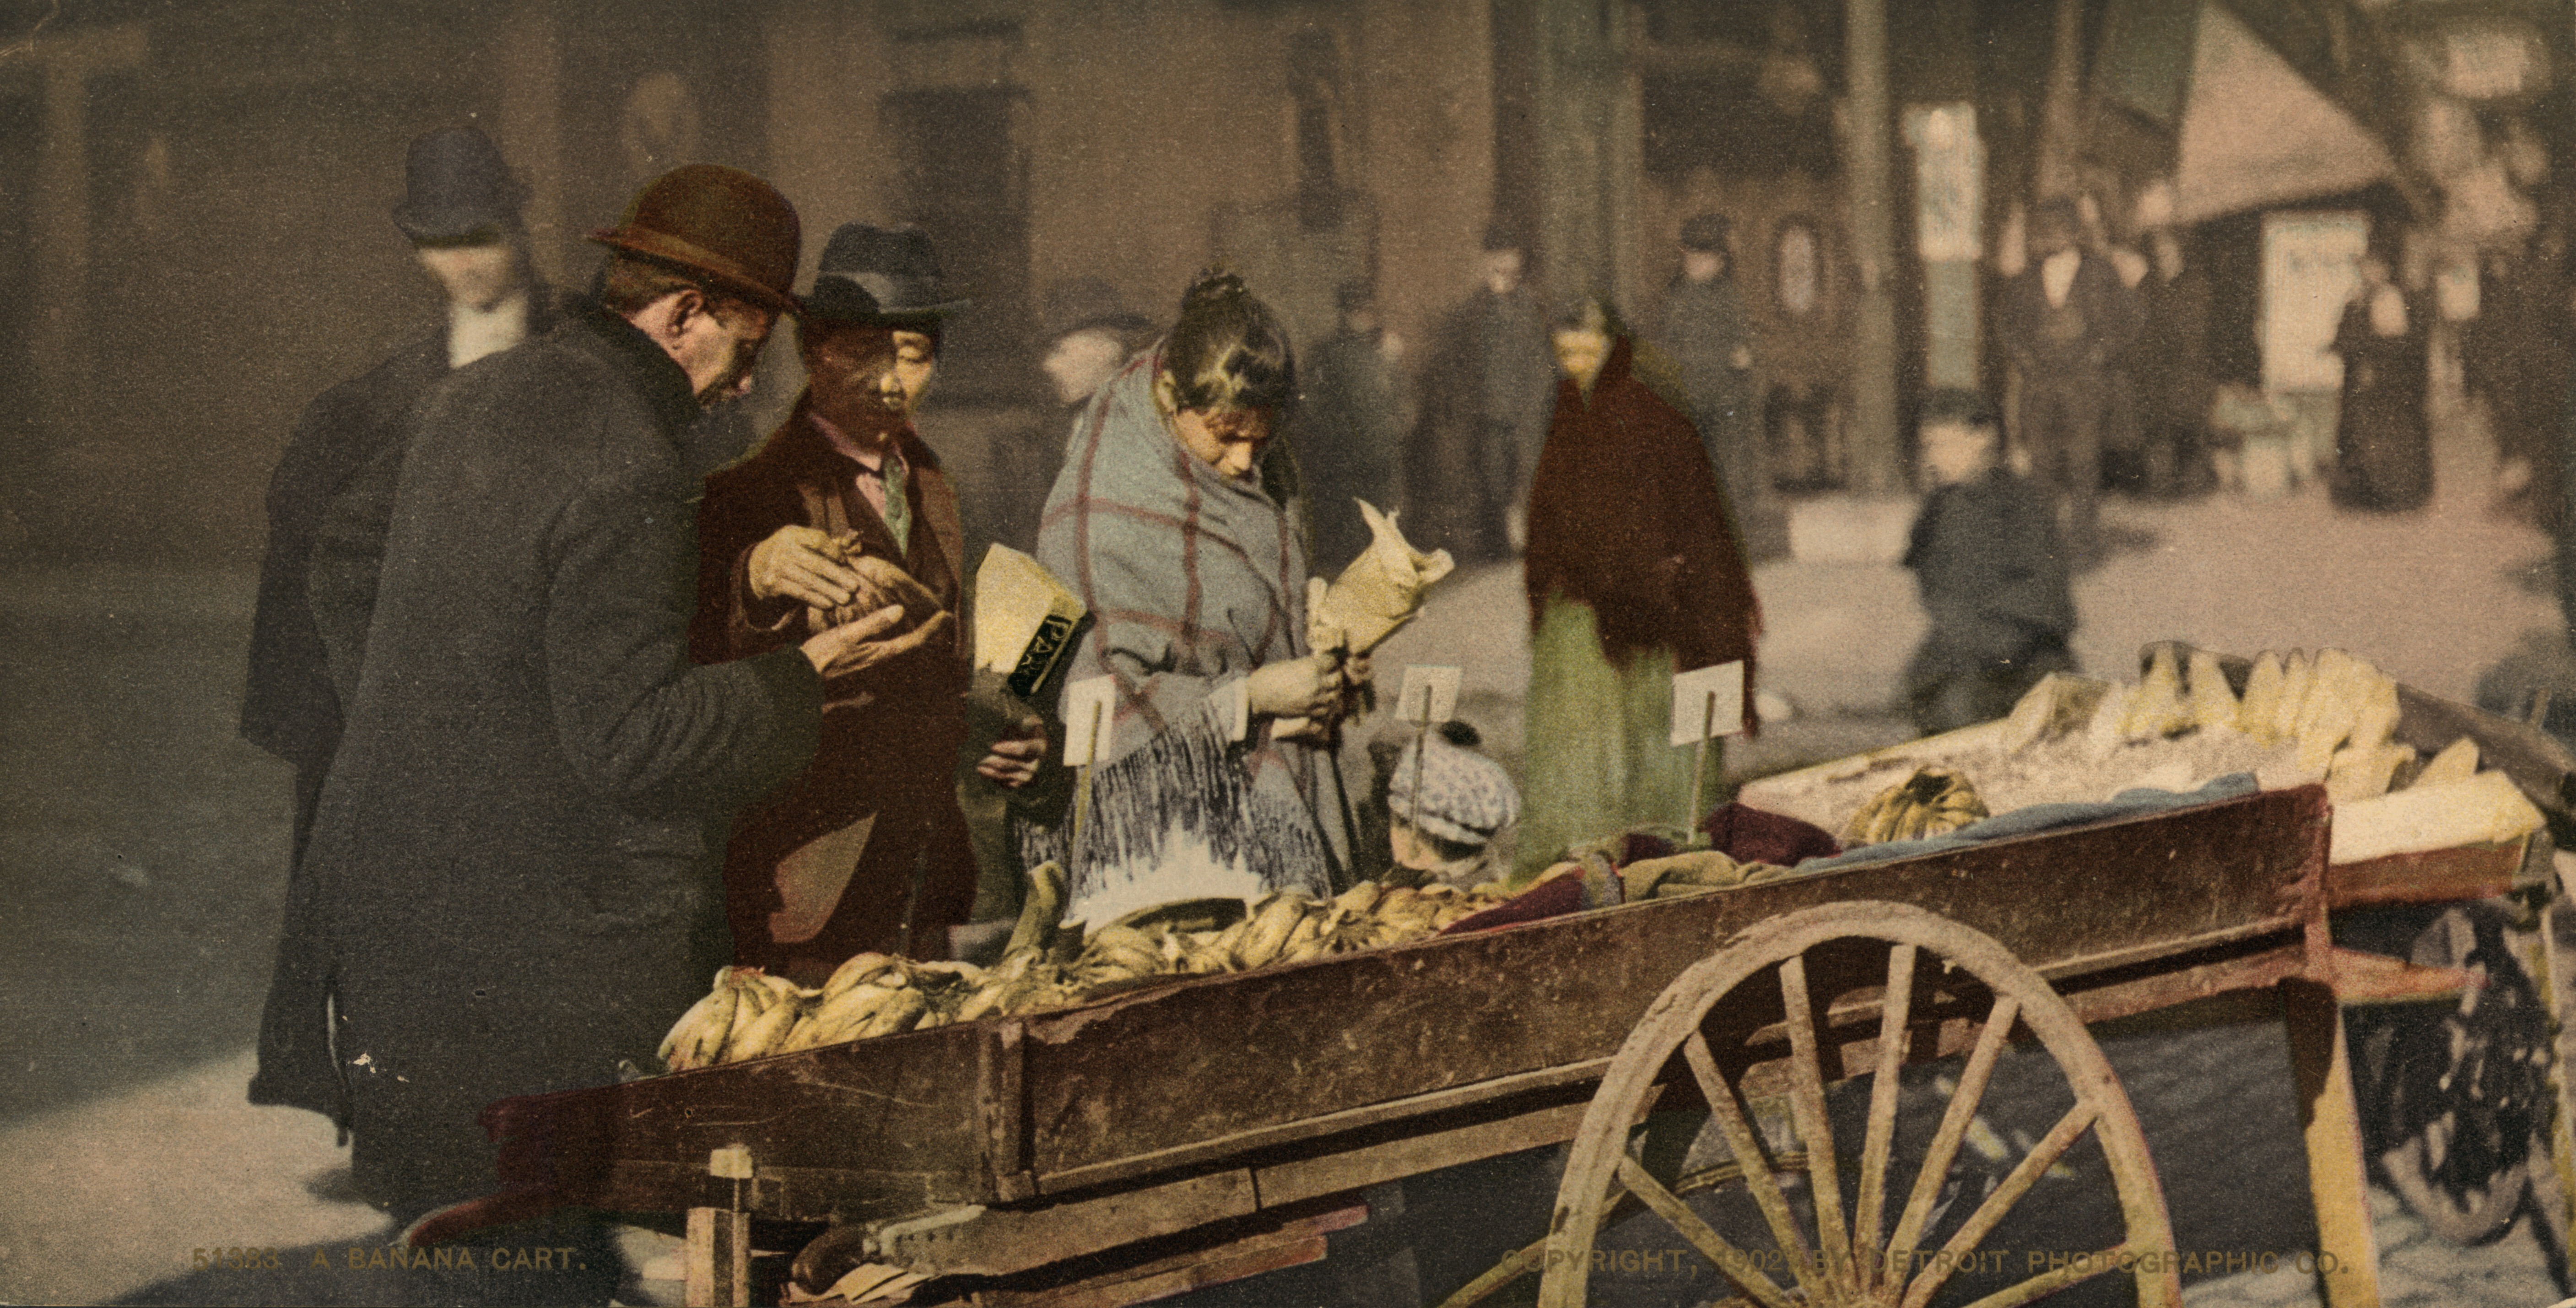 Банановая тележка, Нью-Йорк, ок. 1902, фотохром